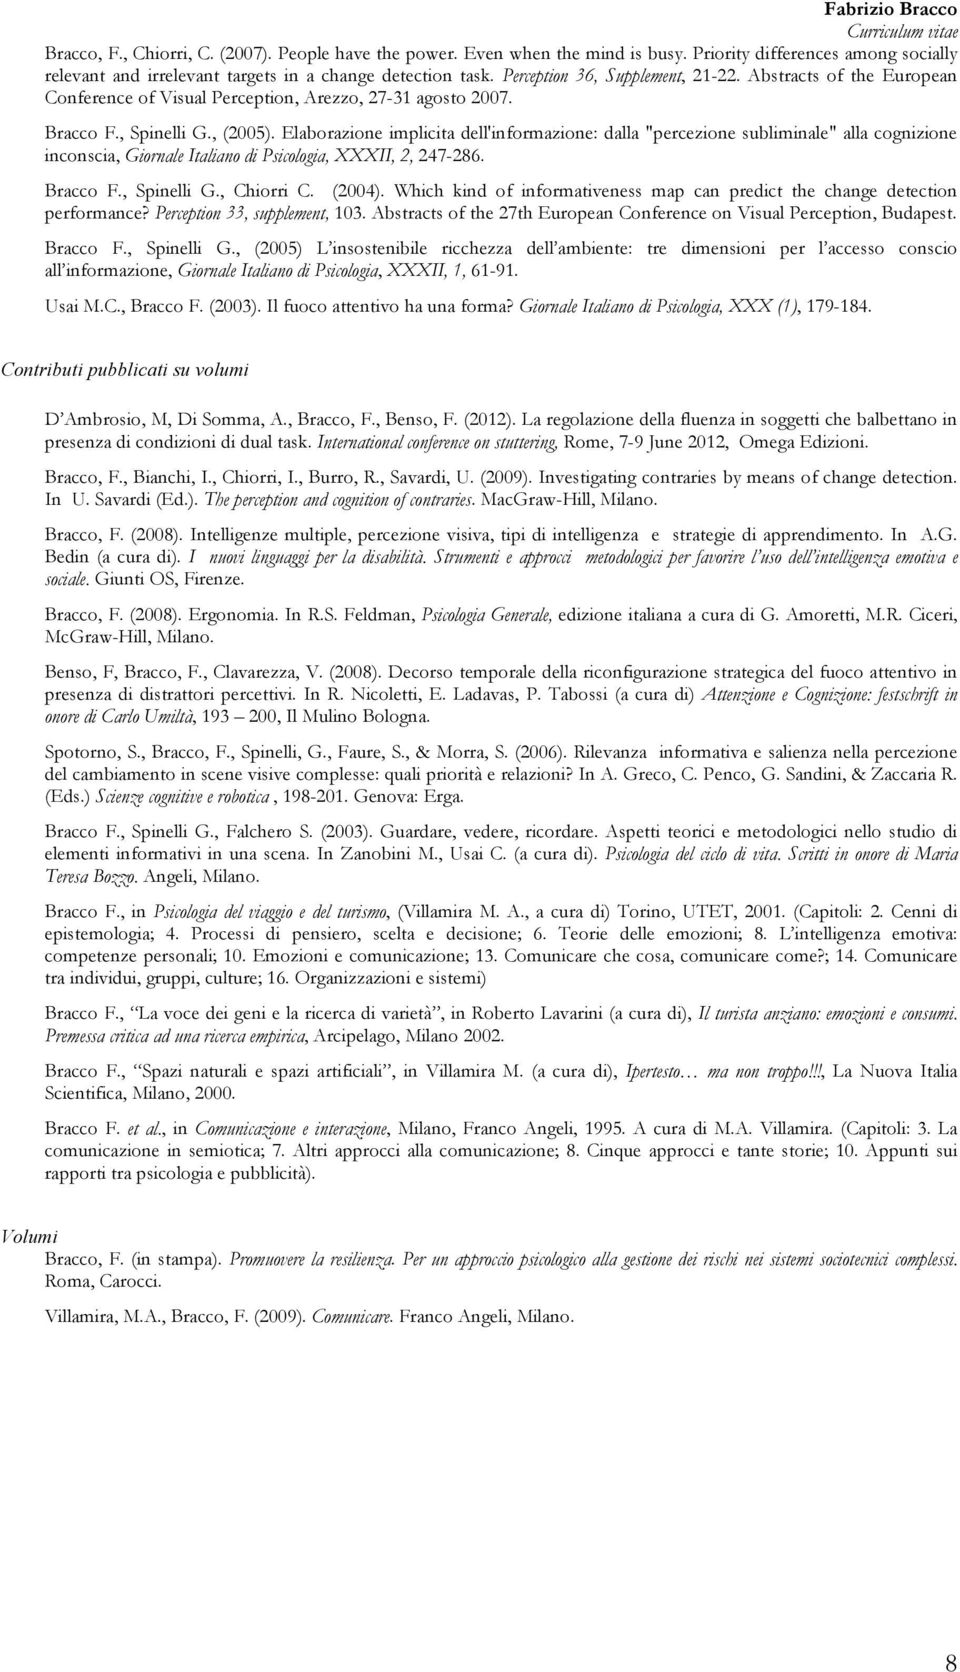 Elaborazione implicita dell'informazione: dalla "percezione subliminale" alla cognizione inconscia, Giornale Italiano di Psicologia, XXXII, 2, 247-286. Bracco F., Spinelli G., Chiorri C. (2004).